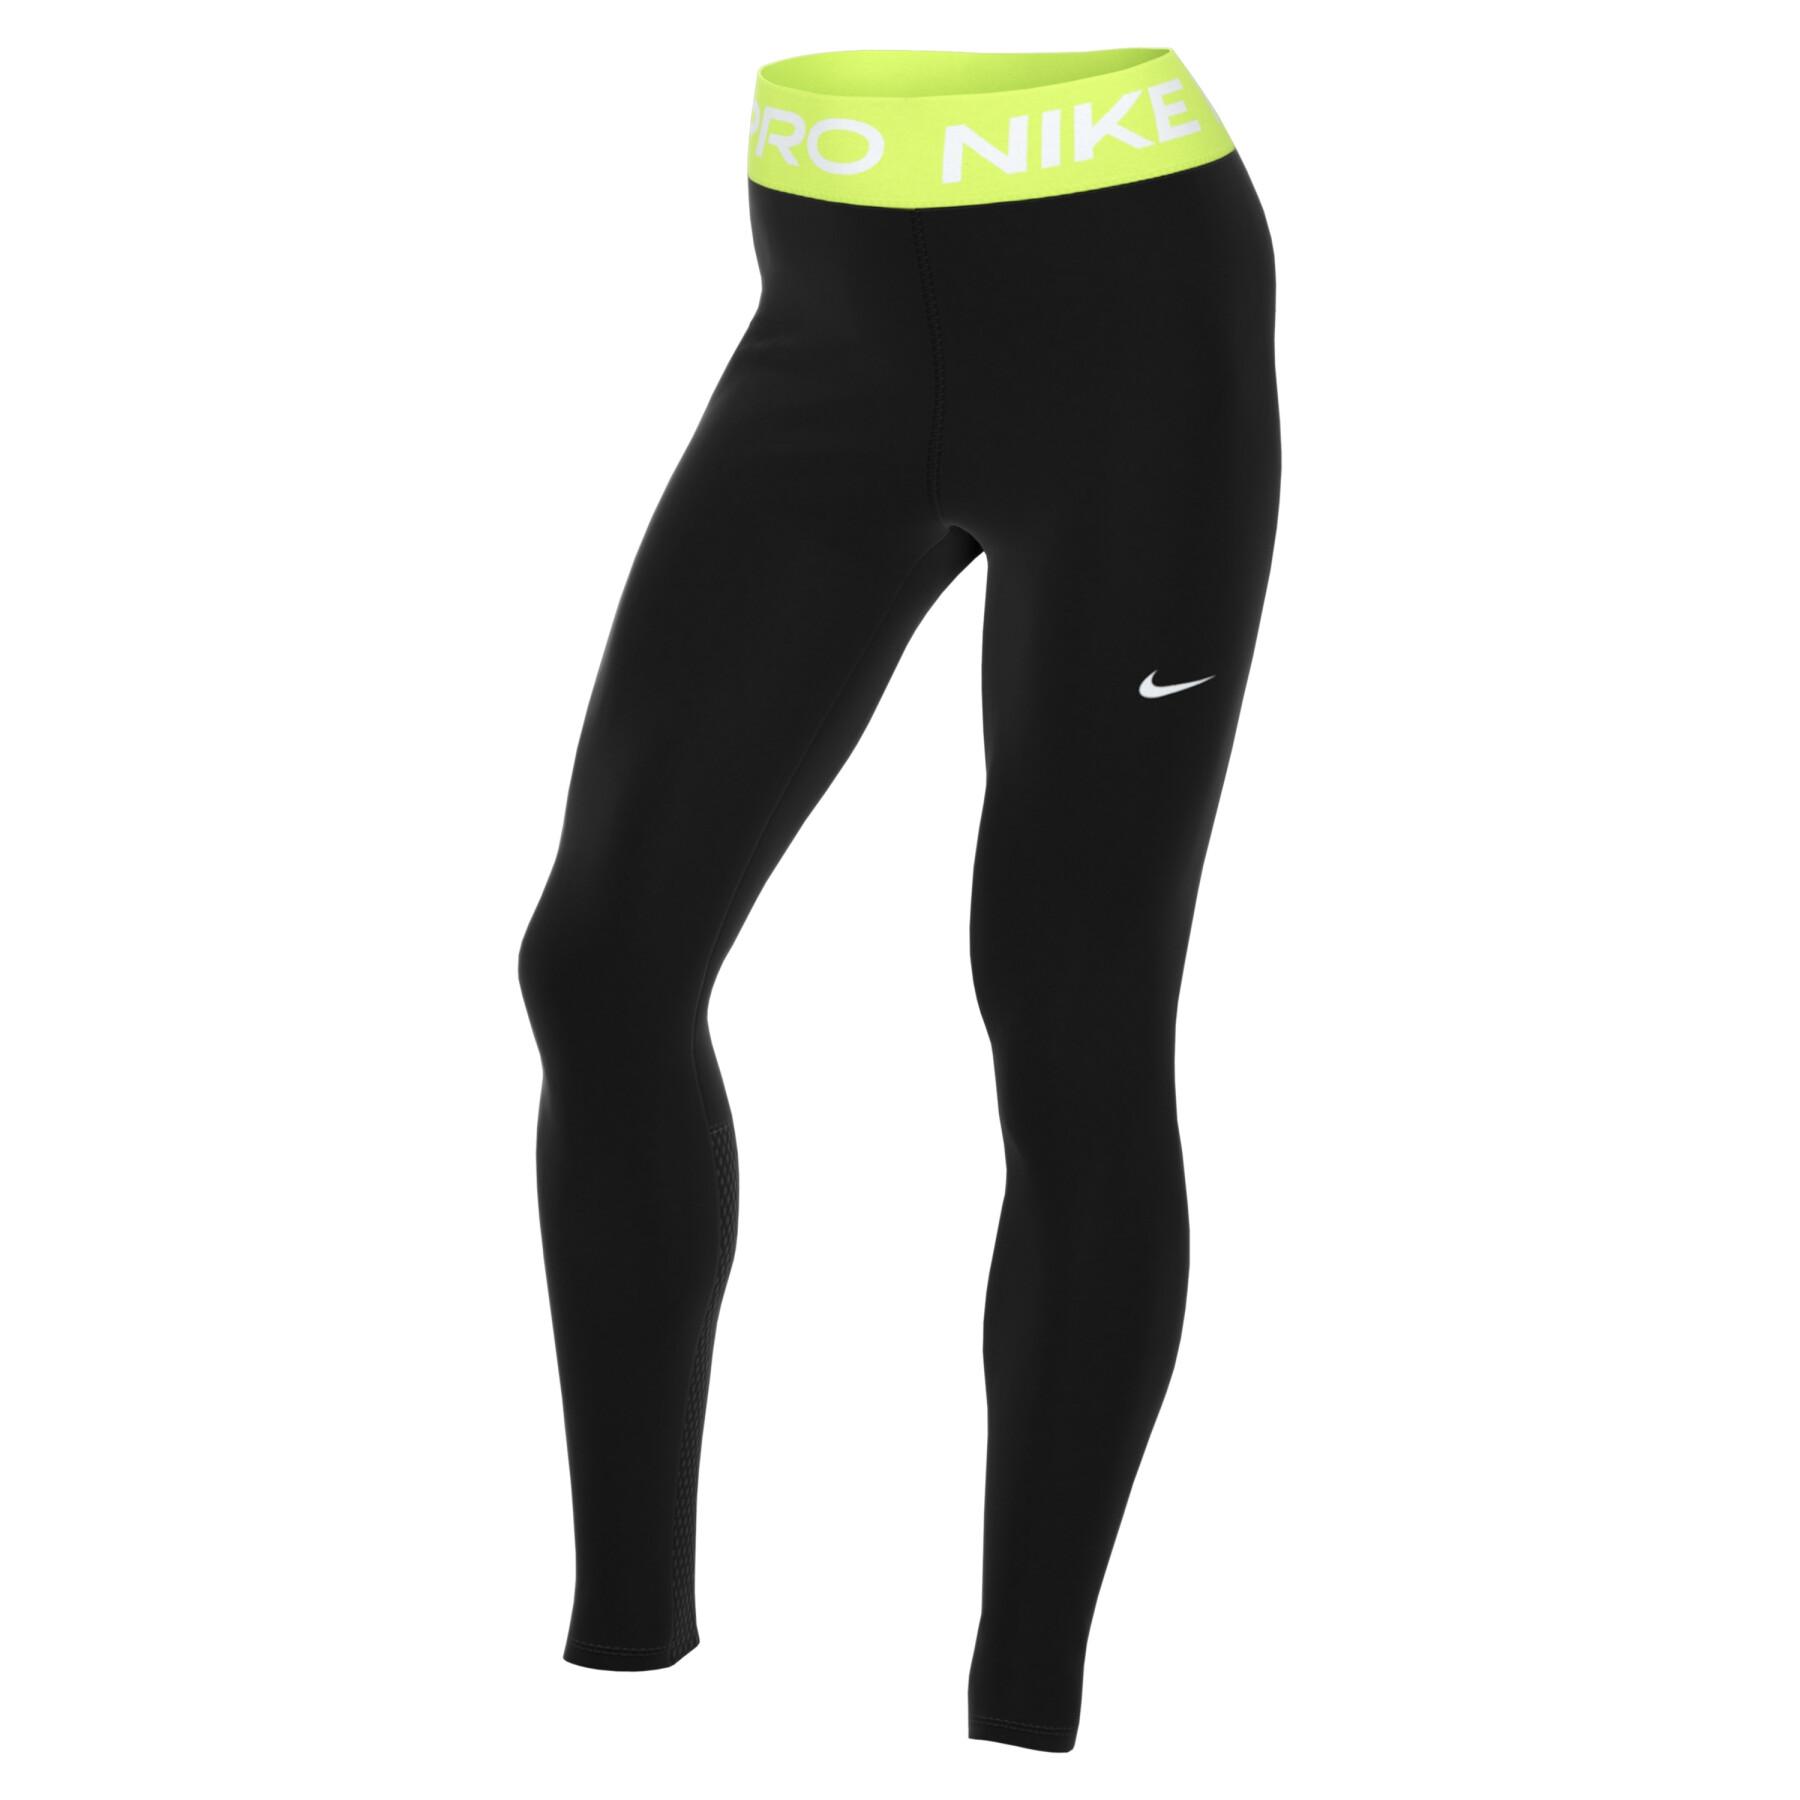 Legging woman Nike Pro 365 - Woman - Beach